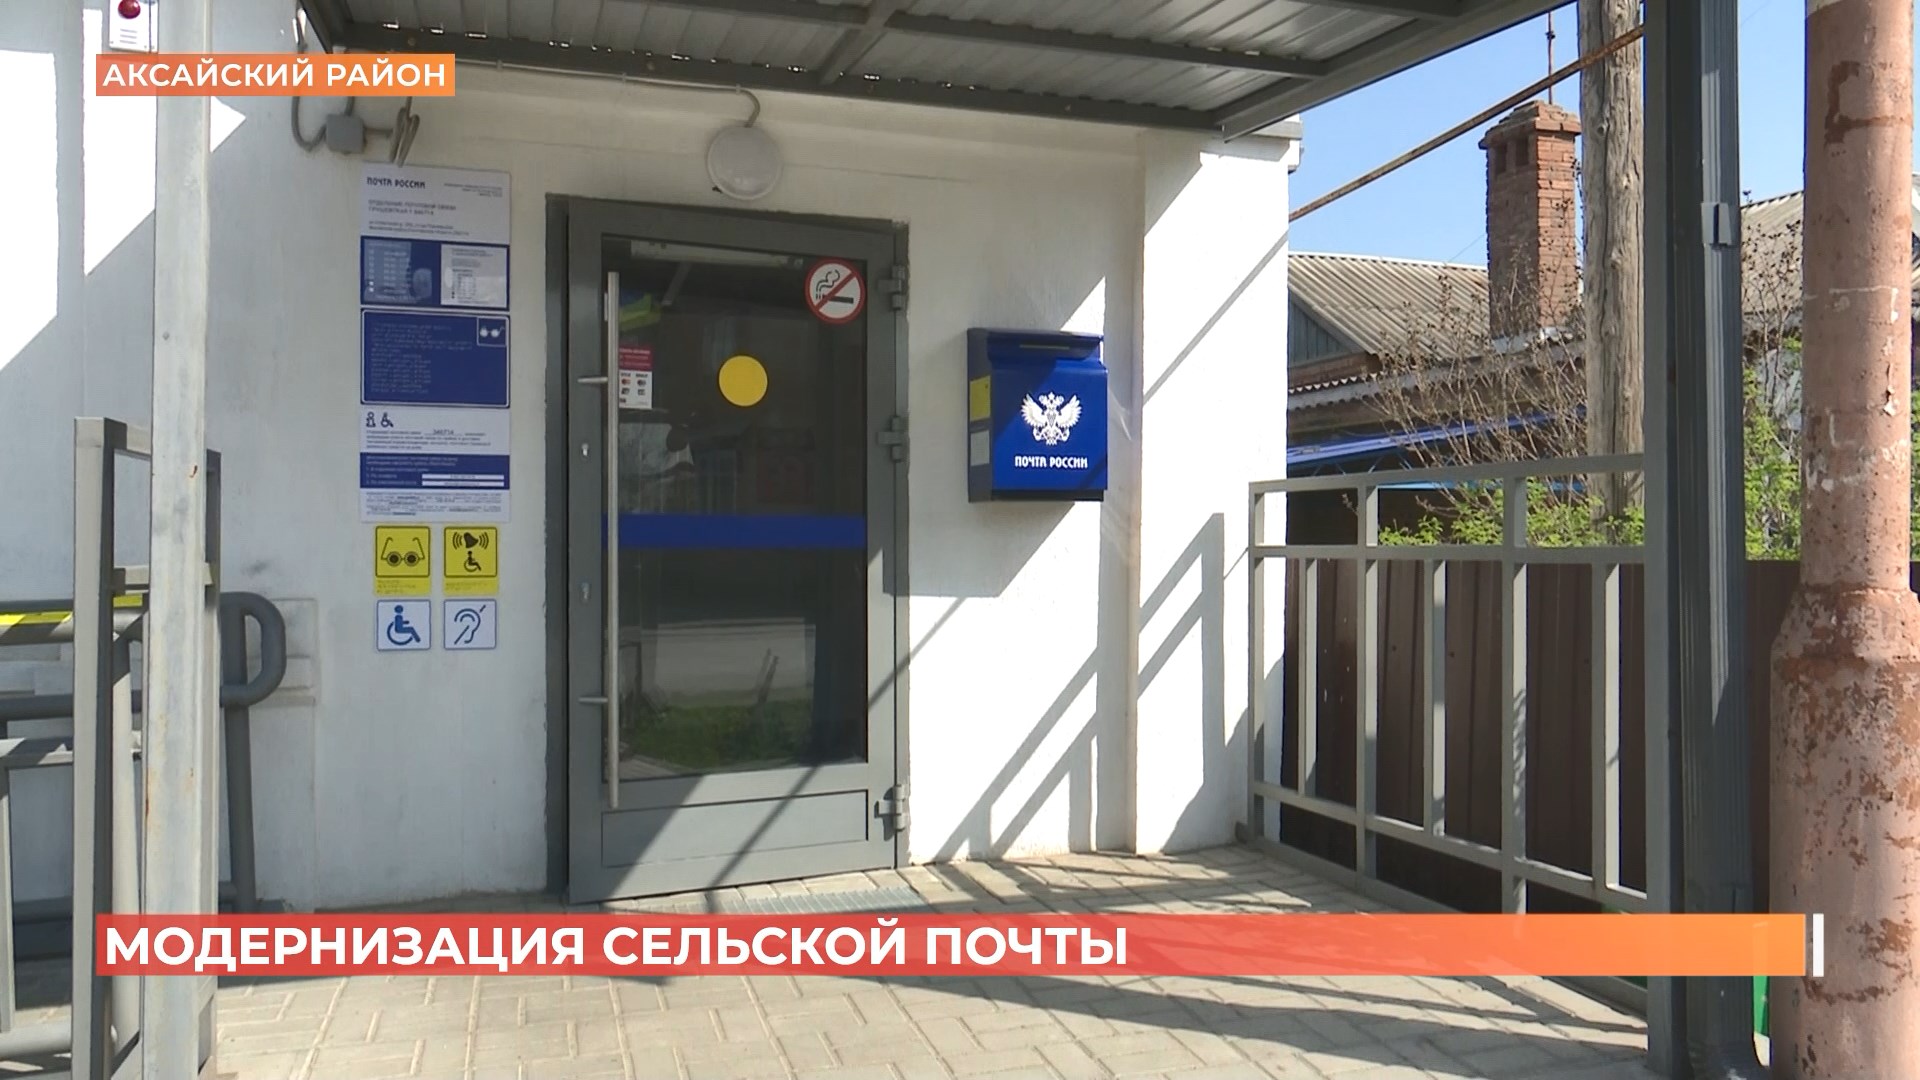 Сельские почтовые отделения Ростовской области расширяют перечень услуг